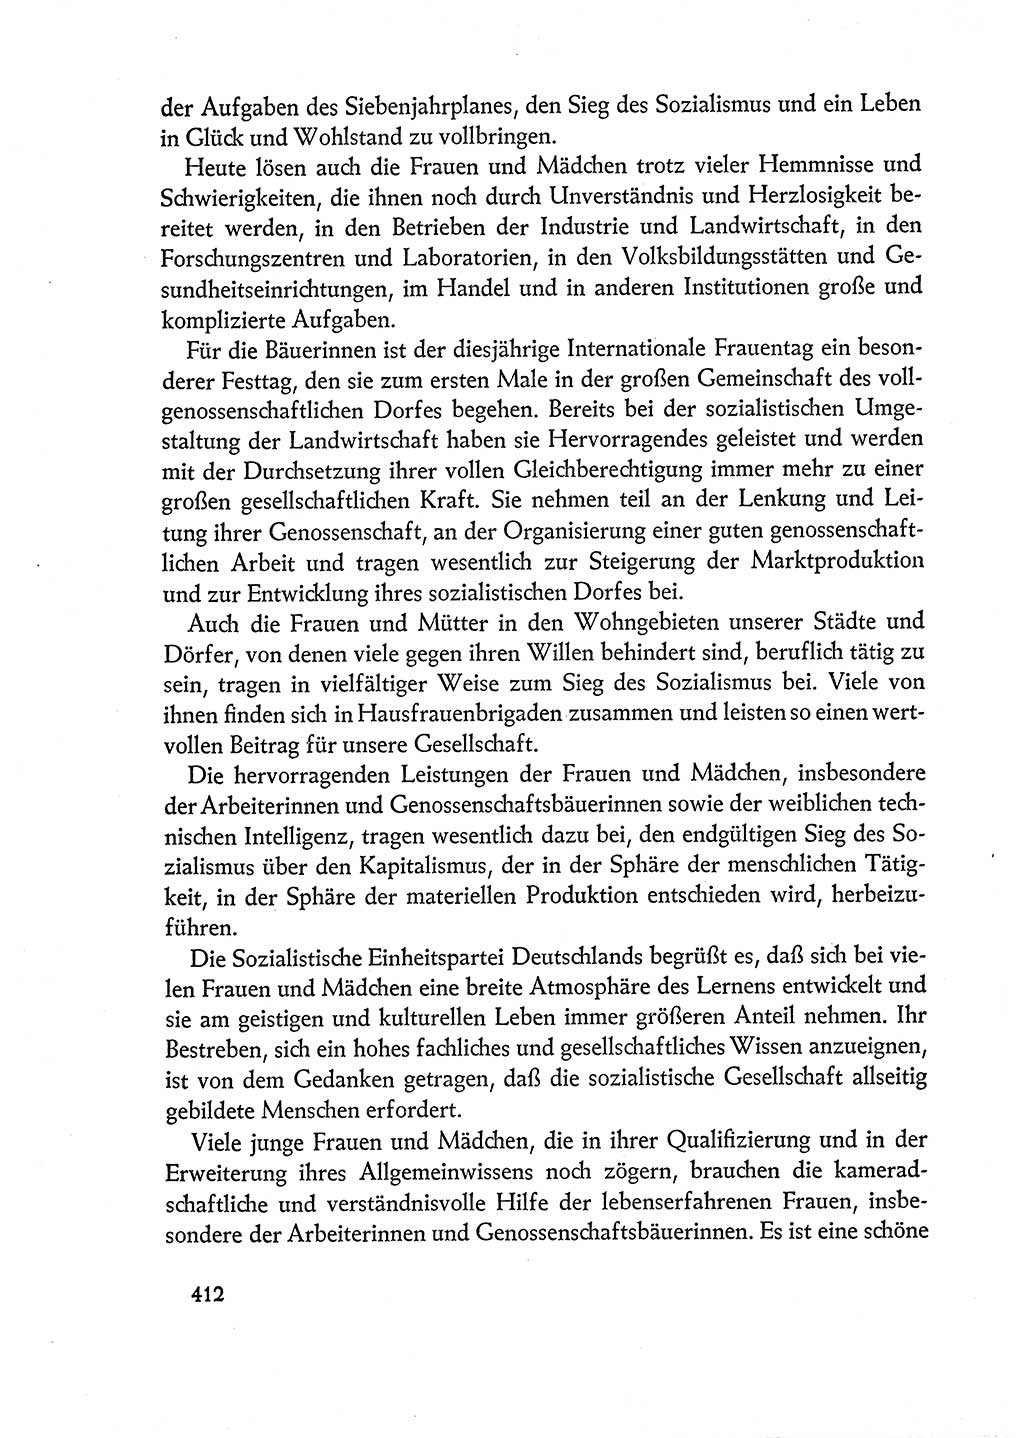 Dokumente der Sozialistischen Einheitspartei Deutschlands (SED) [Deutsche Demokratische Republik (DDR)] 1960-1961, Seite 412 (Dok. SED DDR 1960-1961, S. 412)